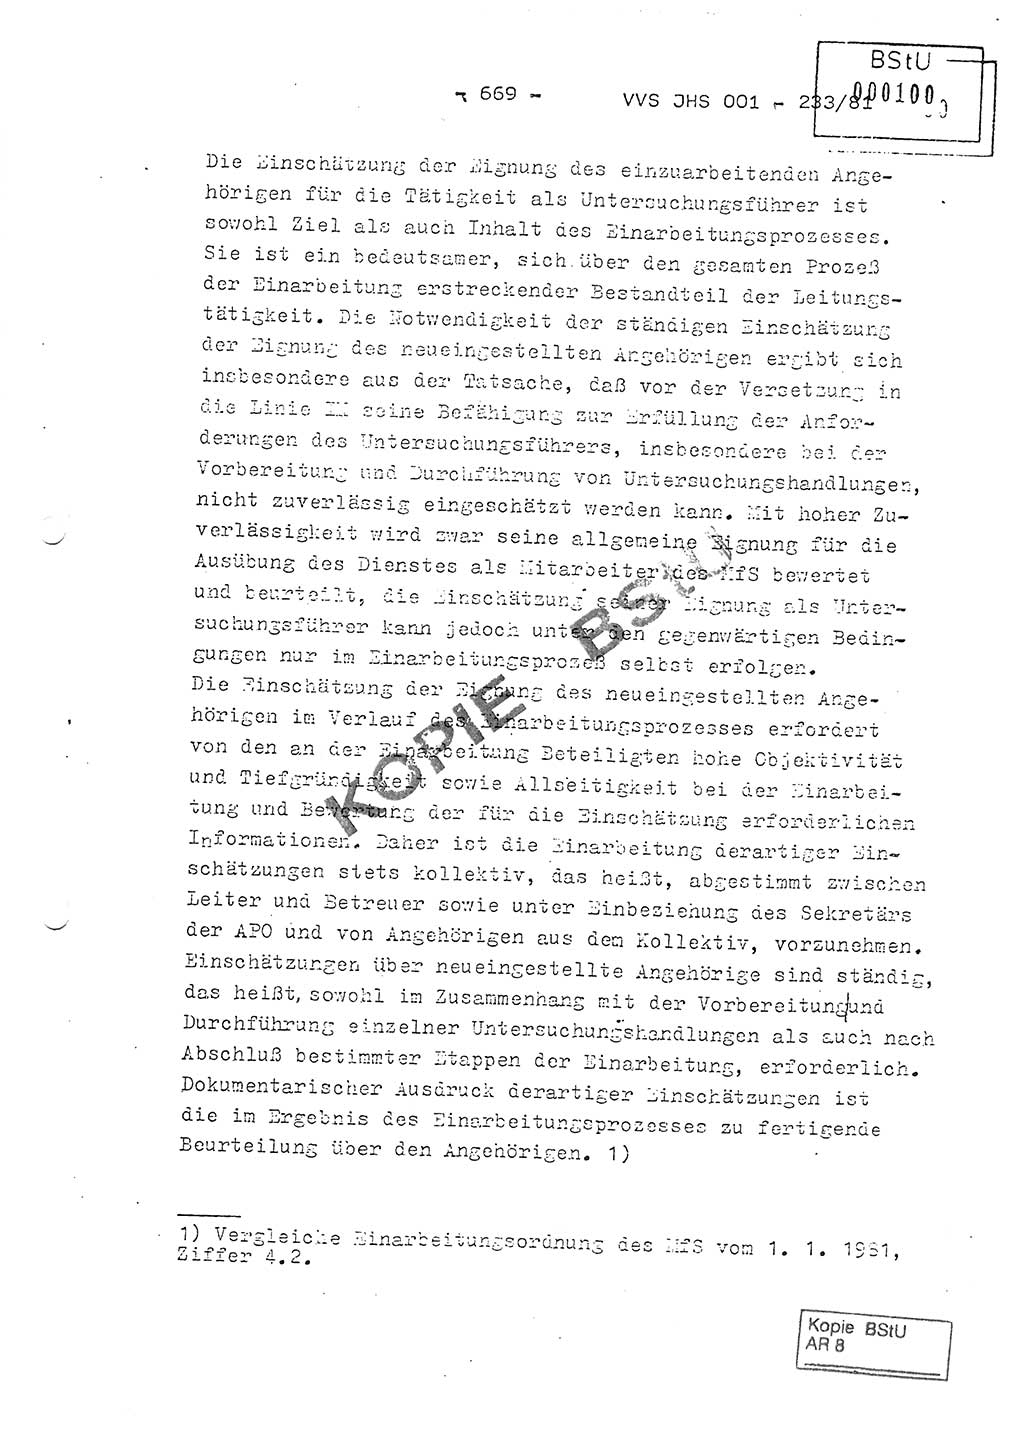 Dissertation Oberstleutnant Horst Zank (JHS), Oberstleutnant Dr. Karl-Heinz Knoblauch (JHS), Oberstleutnant Gustav-Adolf Kowalewski (HA Ⅸ), Oberstleutnant Wolfgang Plötner (HA Ⅸ), Ministerium für Staatssicherheit (MfS) [Deutsche Demokratische Republik (DDR)], Juristische Hochschule (JHS), Vertrauliche Verschlußsache (VVS) o001-233/81, Potsdam 1981, Blatt 669 (Diss. MfS DDR JHS VVS o001-233/81 1981, Bl. 669)